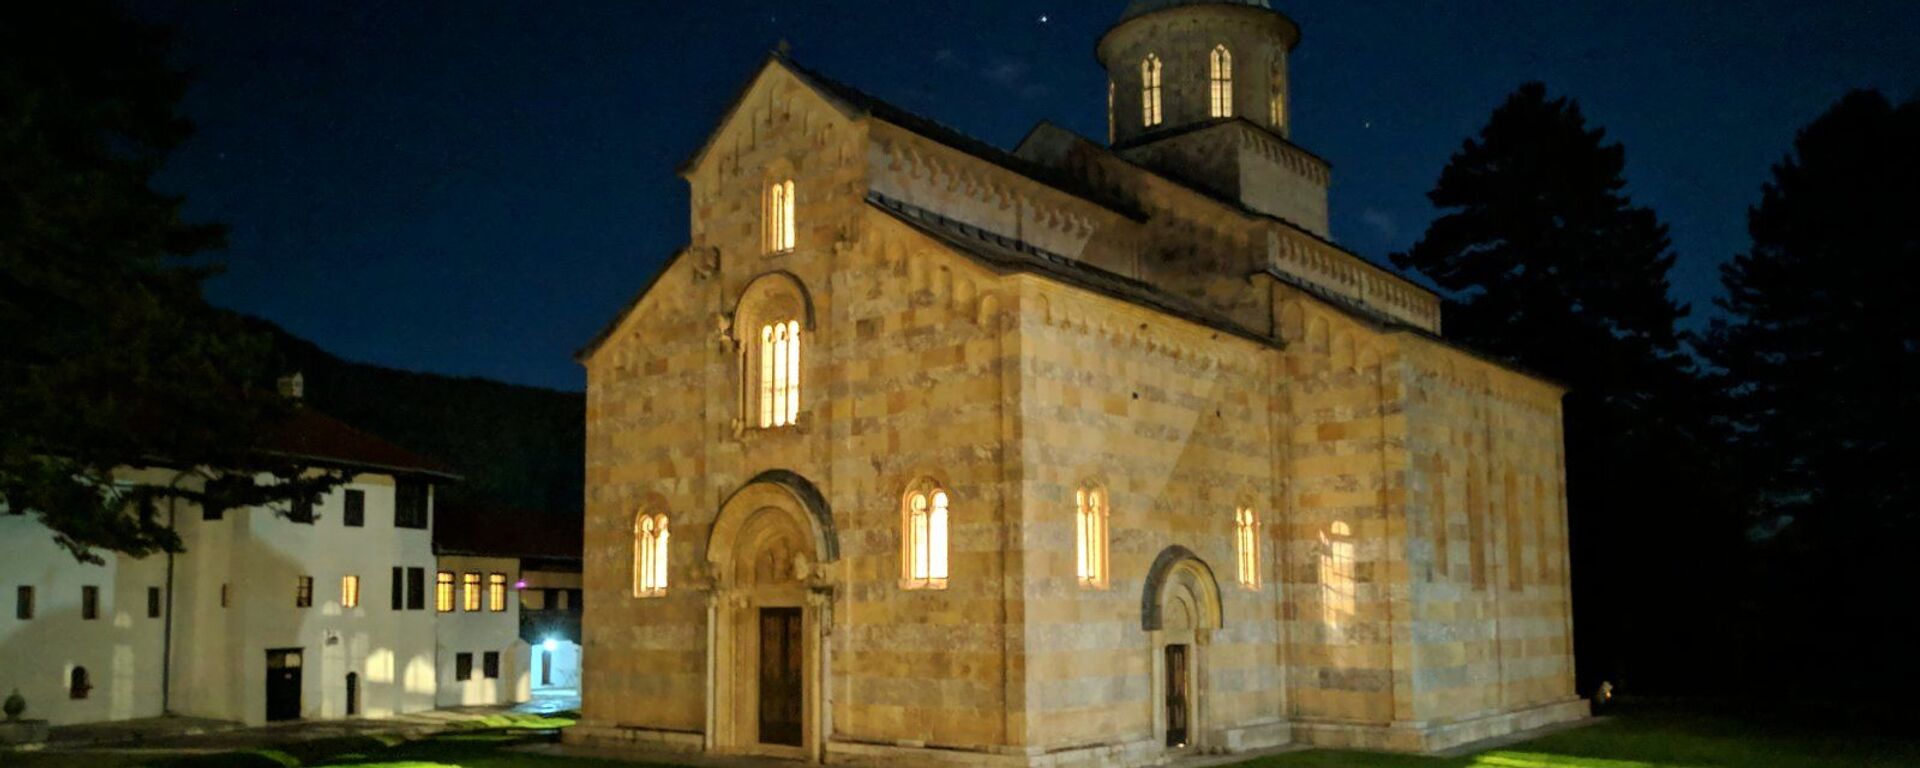 Četiri puta napadan oružano, manastir Viskoki Dečani je najčešće napadan objekat, ne samo Srpske Pravoslavne Crkve, već hrišćanski,na teritoriji Evrope od Drugog svetskog rata. - Sputnik Srbija, 1920, 11.04.2021